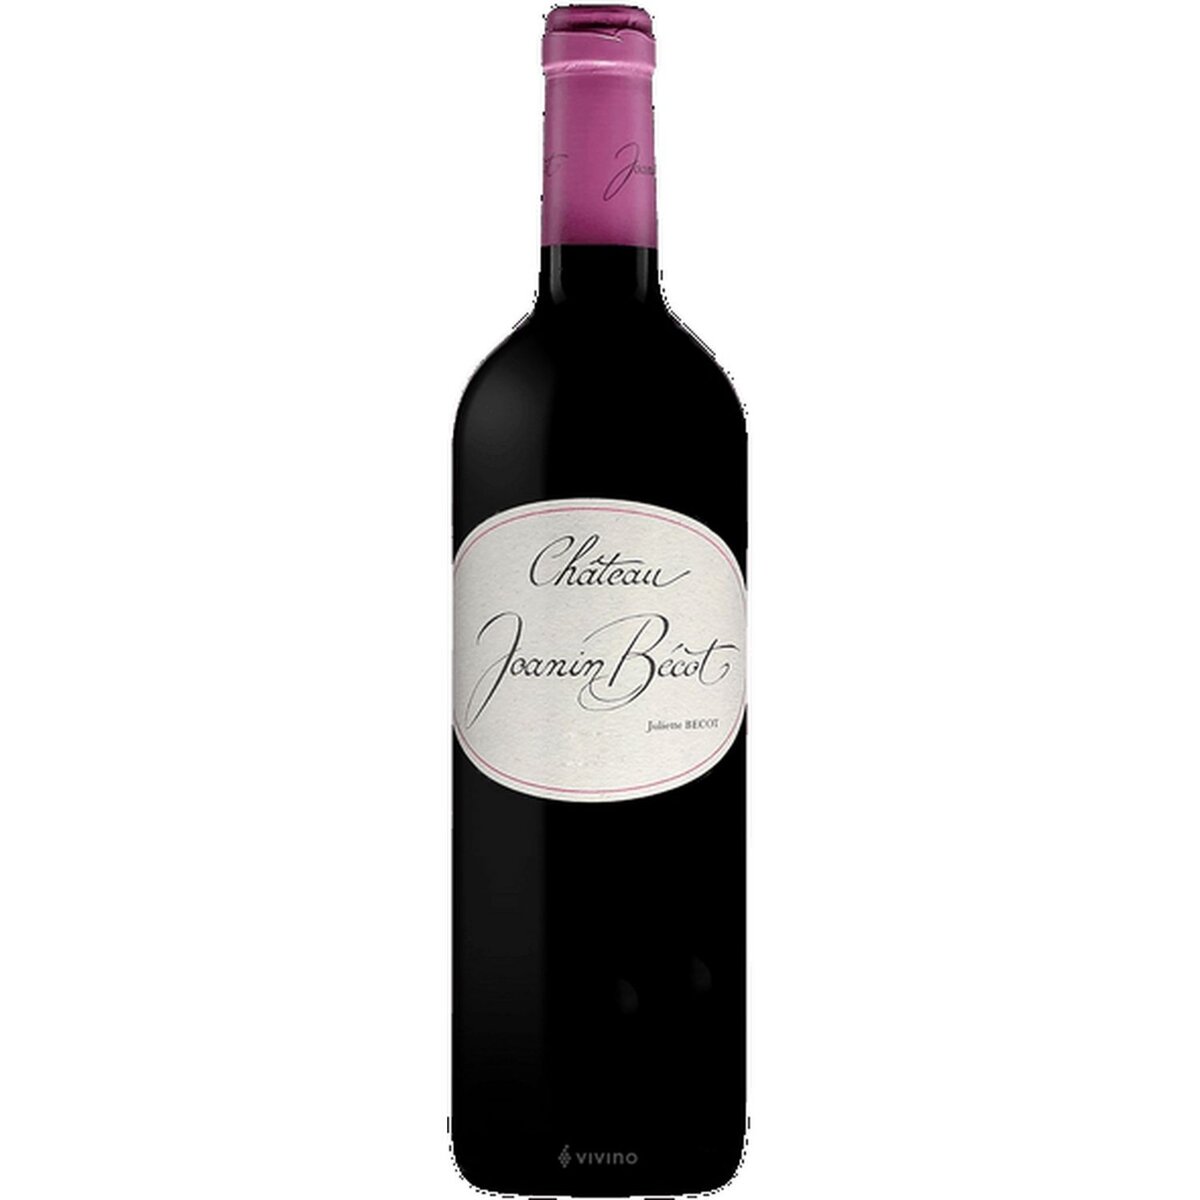 Vin rouge AOP Castillon Côtes-de-Bordeaux Château Joanin Becot 2017 Magnum 1,5L